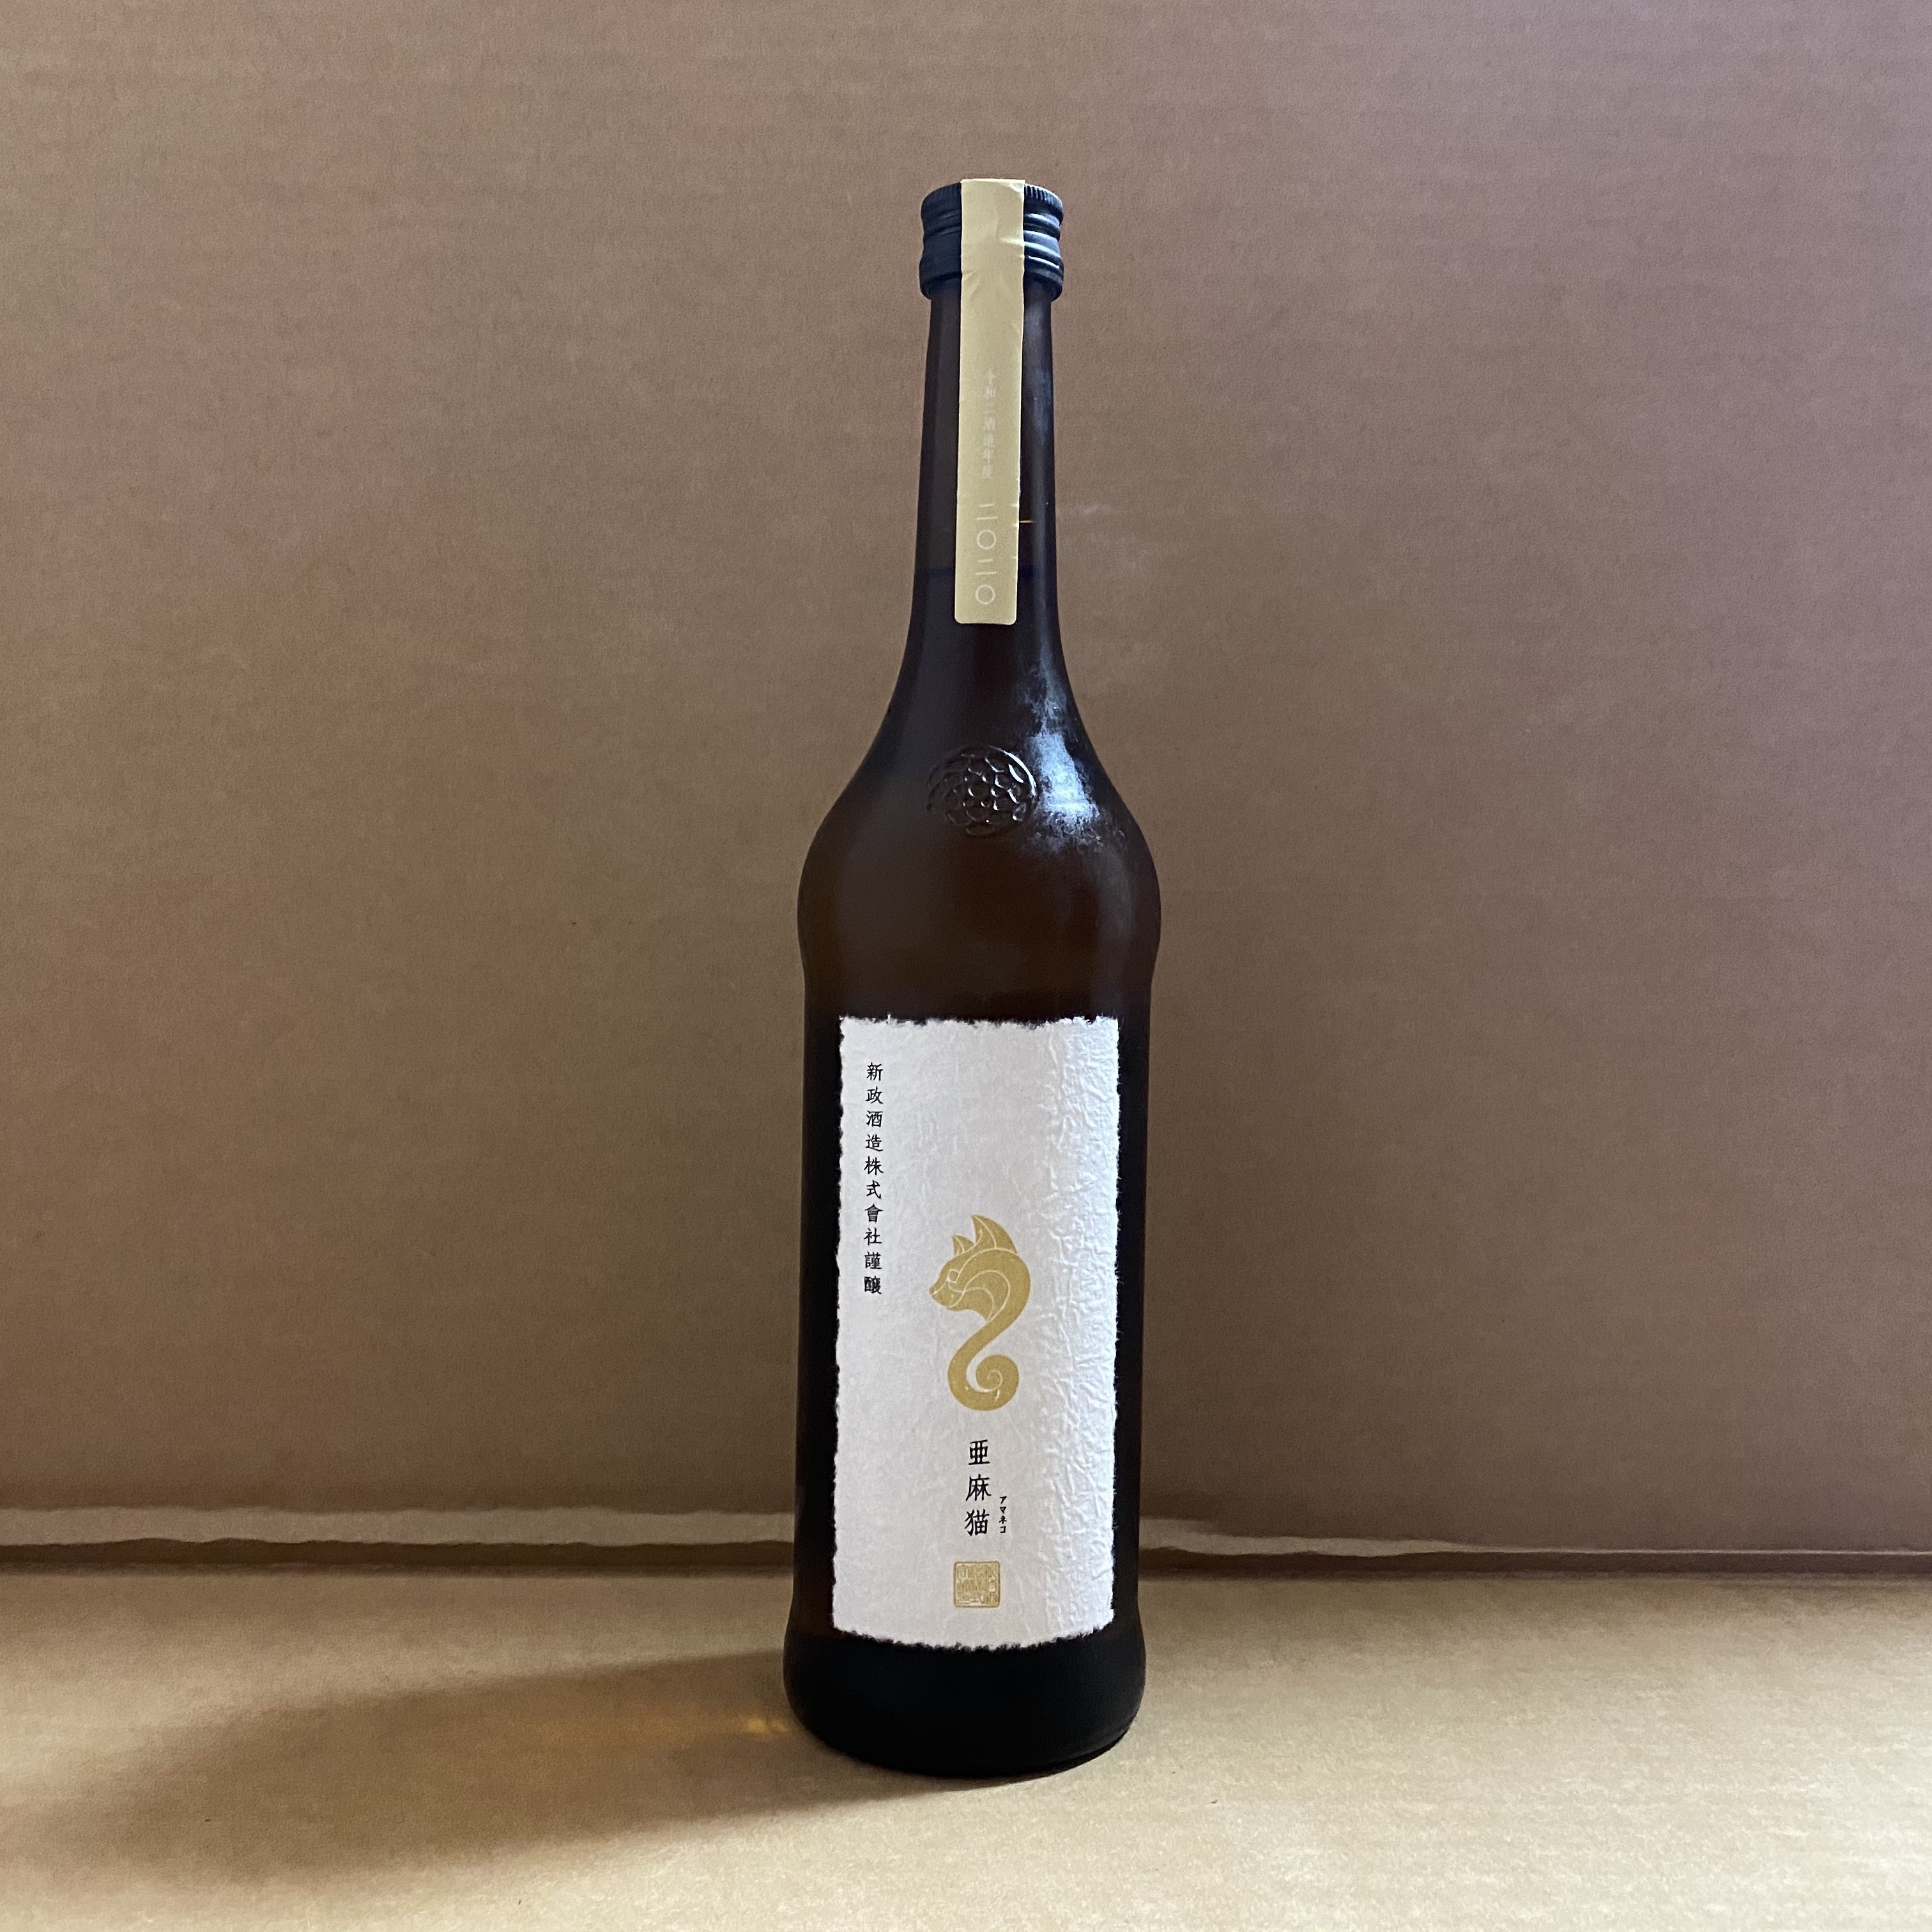 日本清酒 新政 亚麻猫 纯米酒6号酵母生酛瓶装720ml 酒类 清酒/烧酒 原图主图